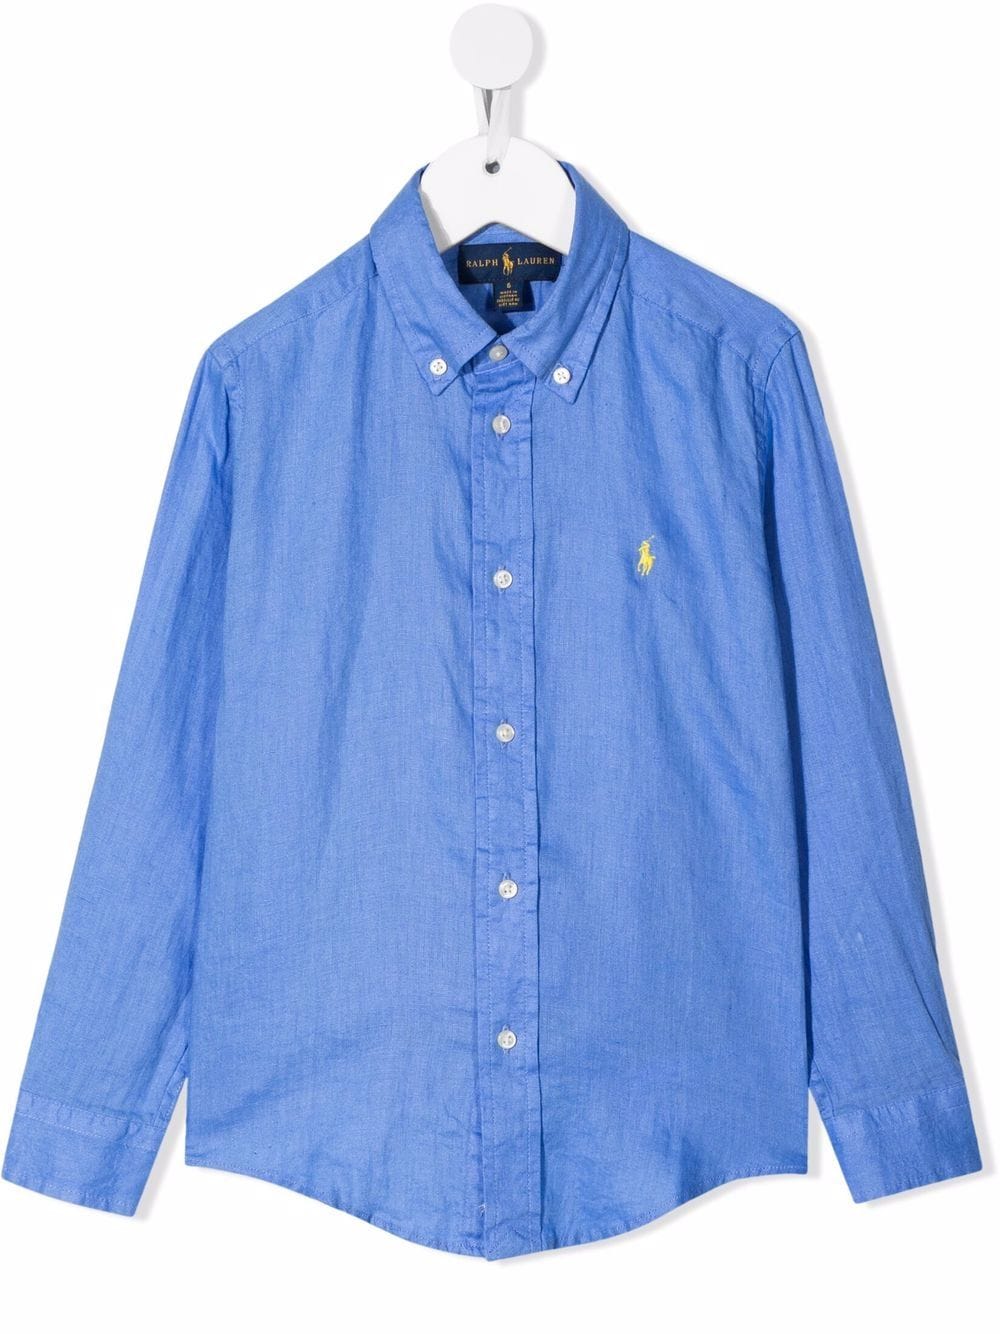 Light blue linen shirt for boys